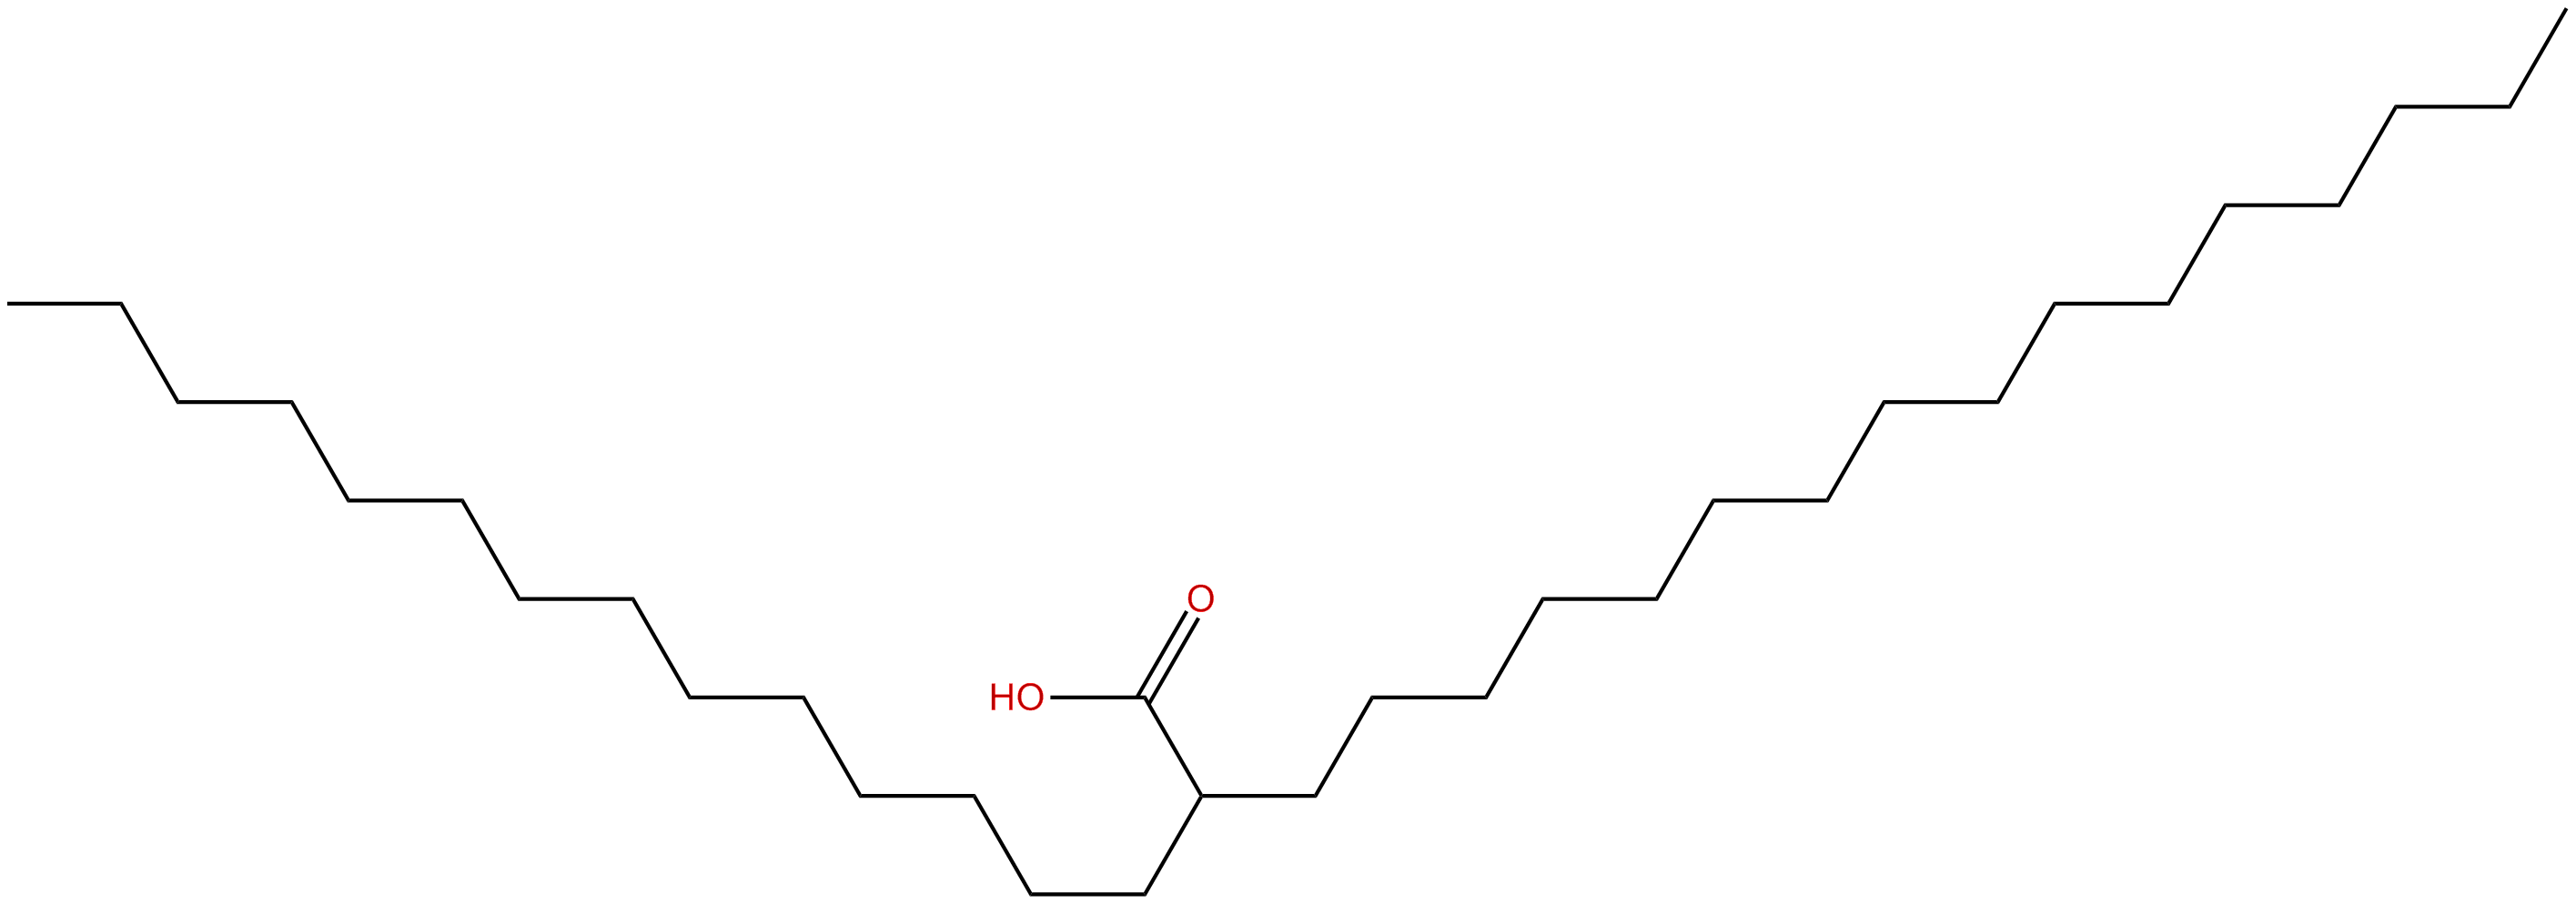 Image of 2-tetradecyloctadecanoic acid